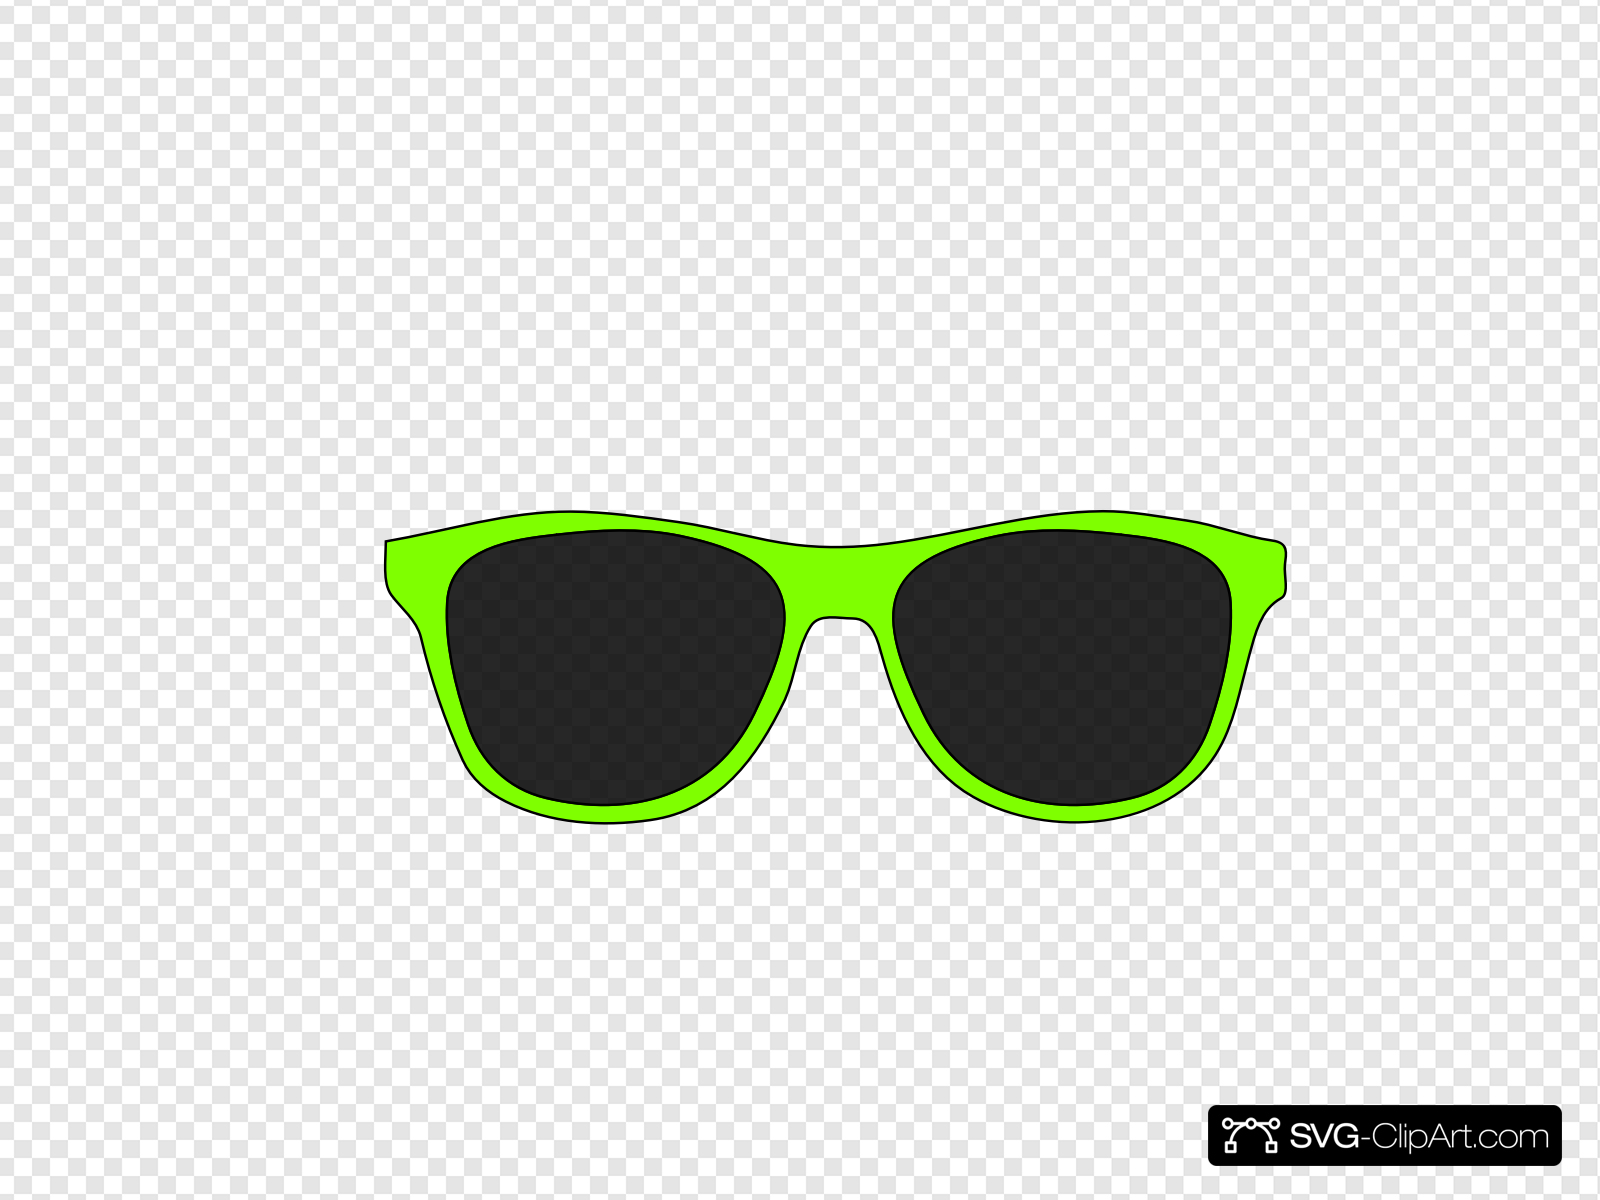 Green Sunglasses Clip art, Icon and SVG